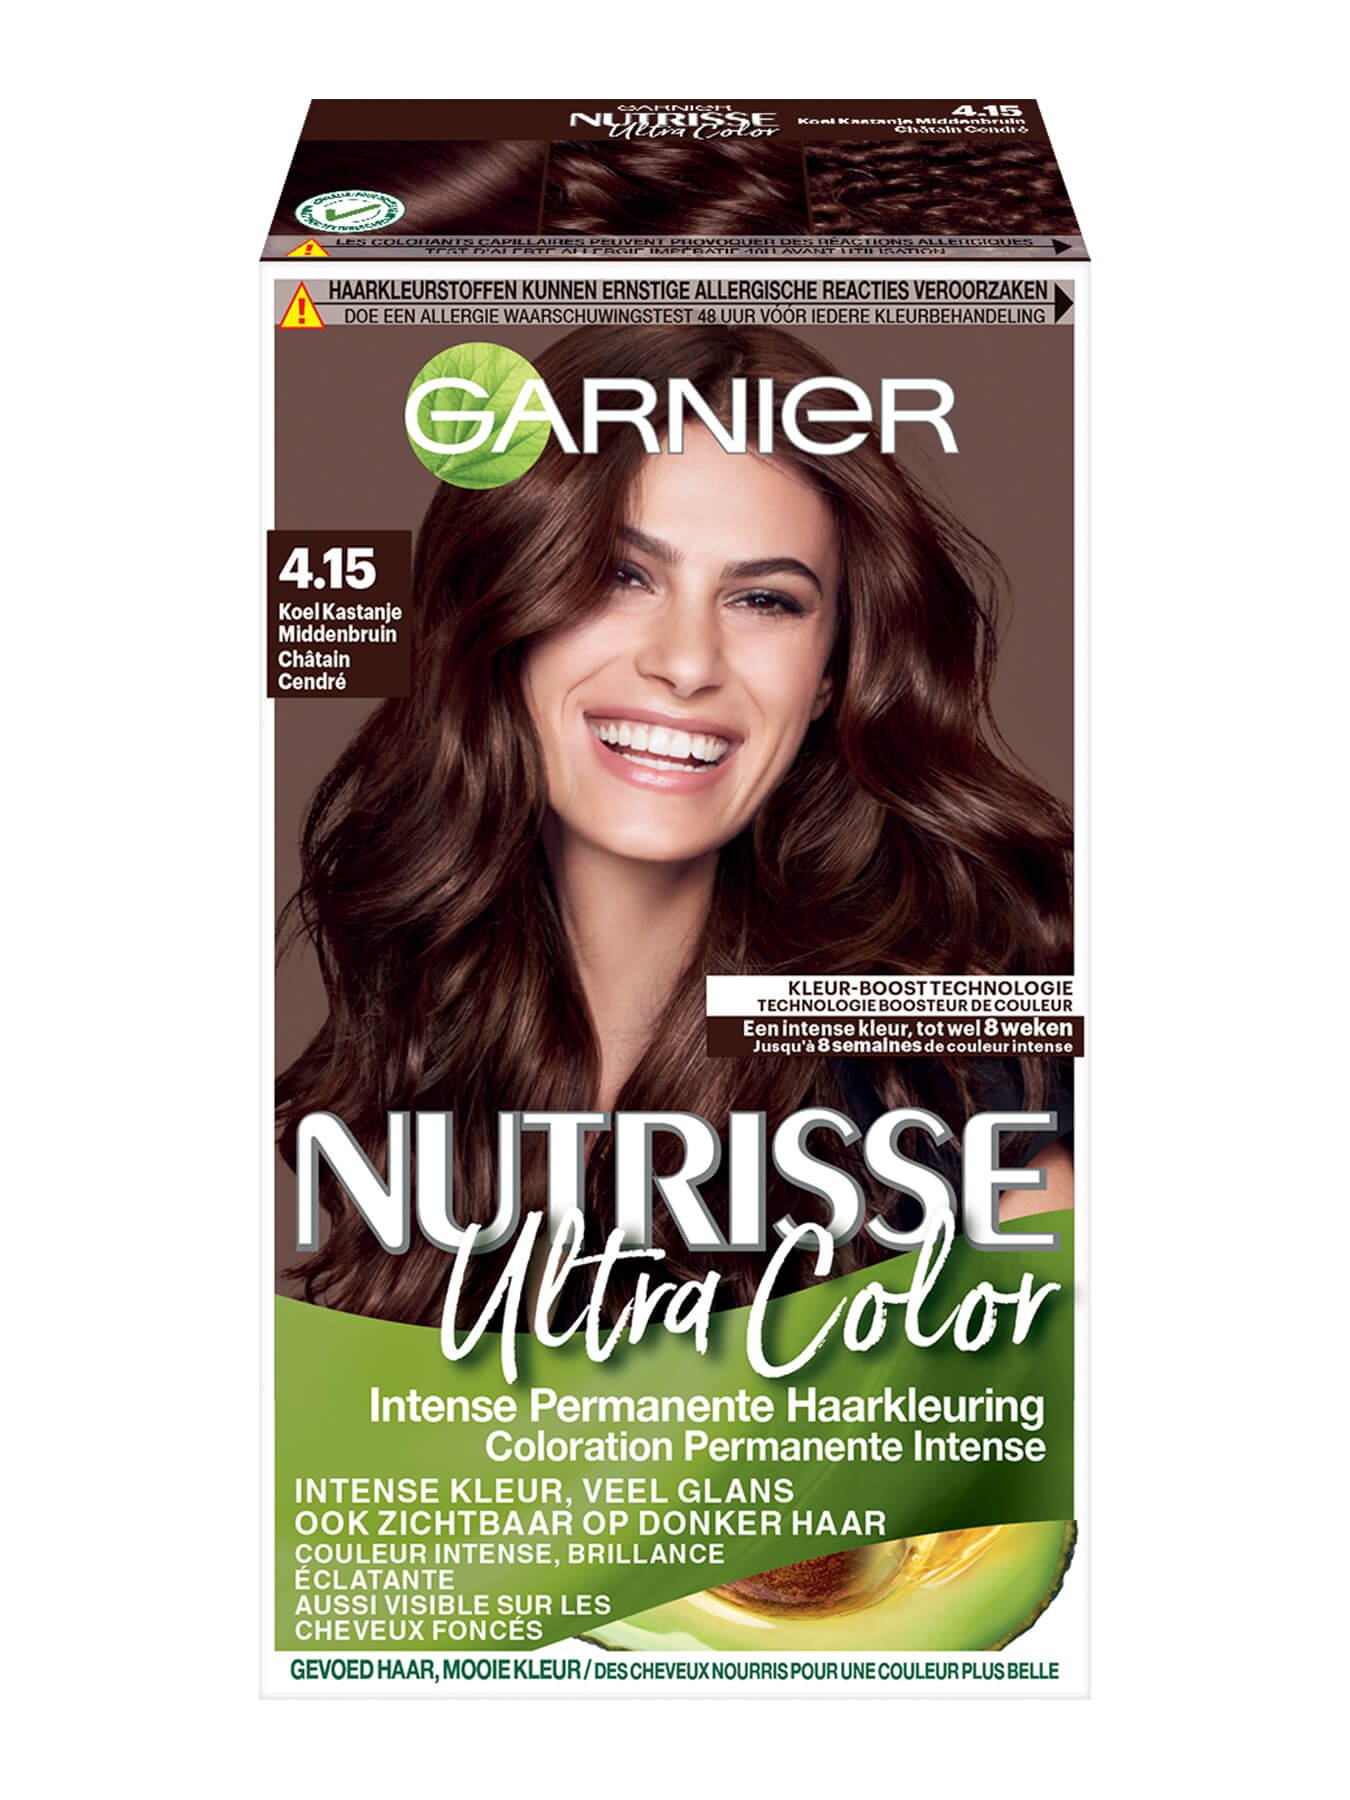 Blijven Diagnostiseren Aanvankelijk Kastanjebruine permanente haarkleuring | Garnier